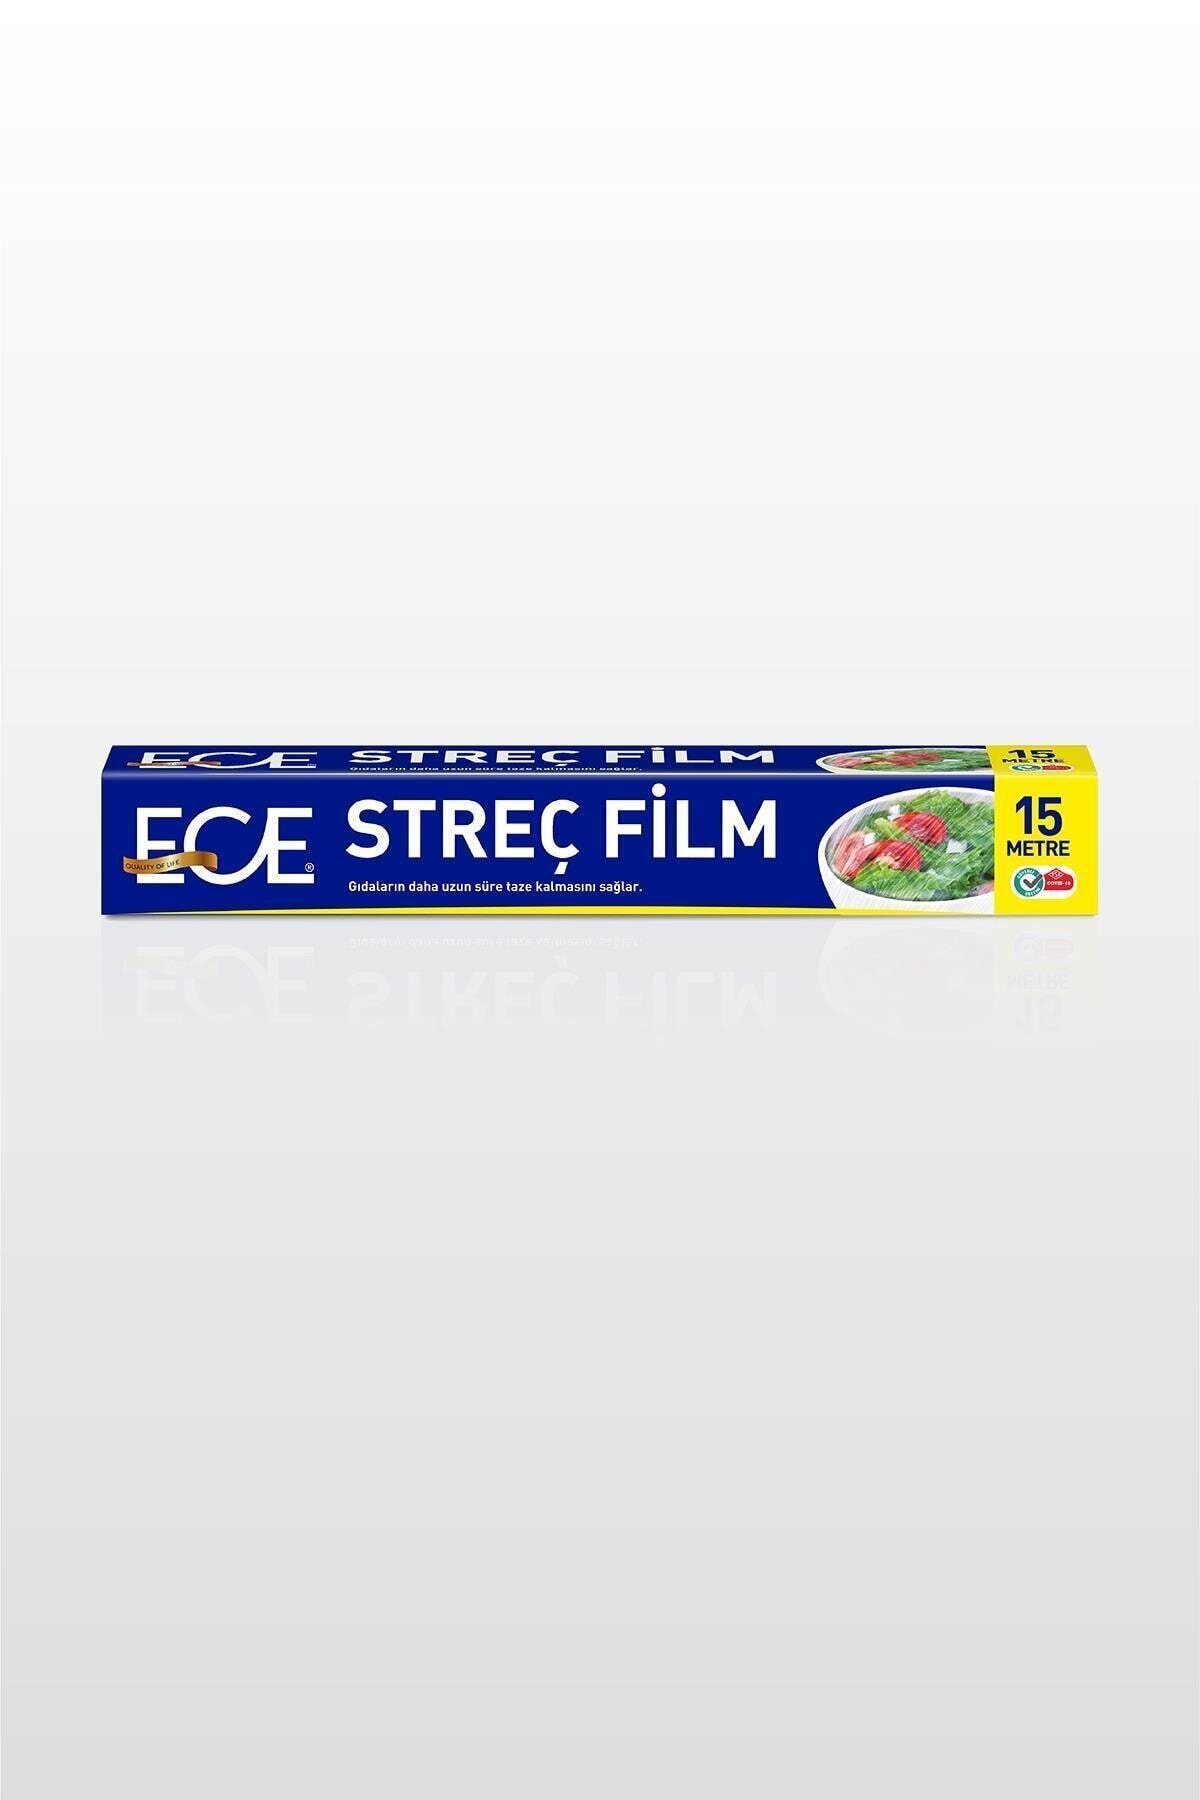 ECE Streç Film 15 Metre